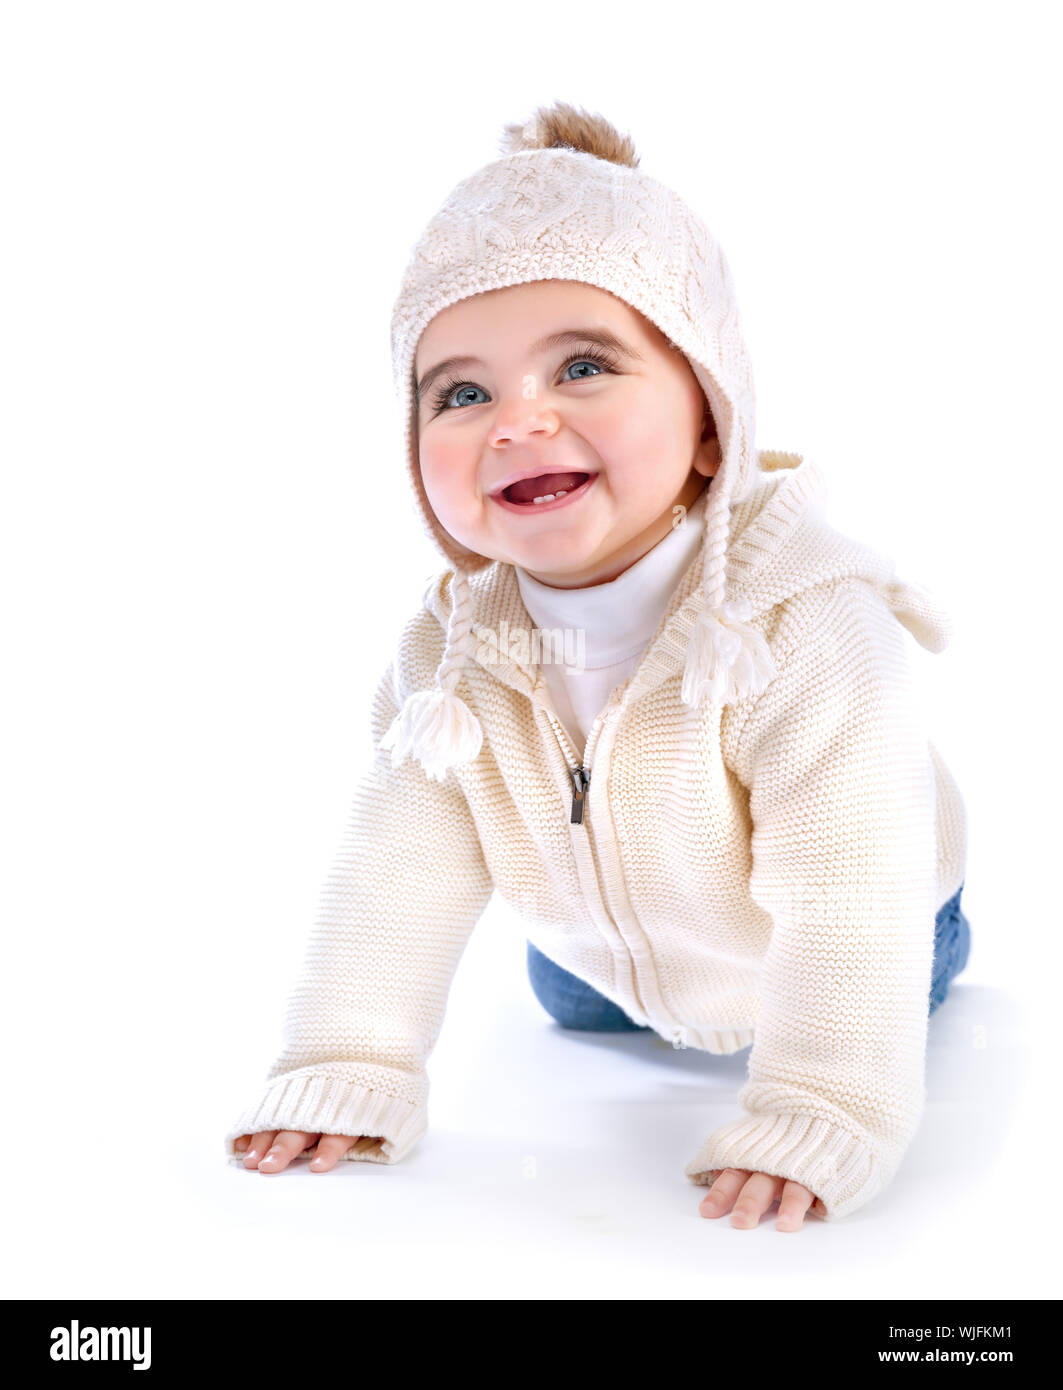 Closeup Portrait des aktiven niedlichen krabbeln im Studio, weiße stilvolle knited Hut und hoody, Winter-Mode für Kinder Stockfoto